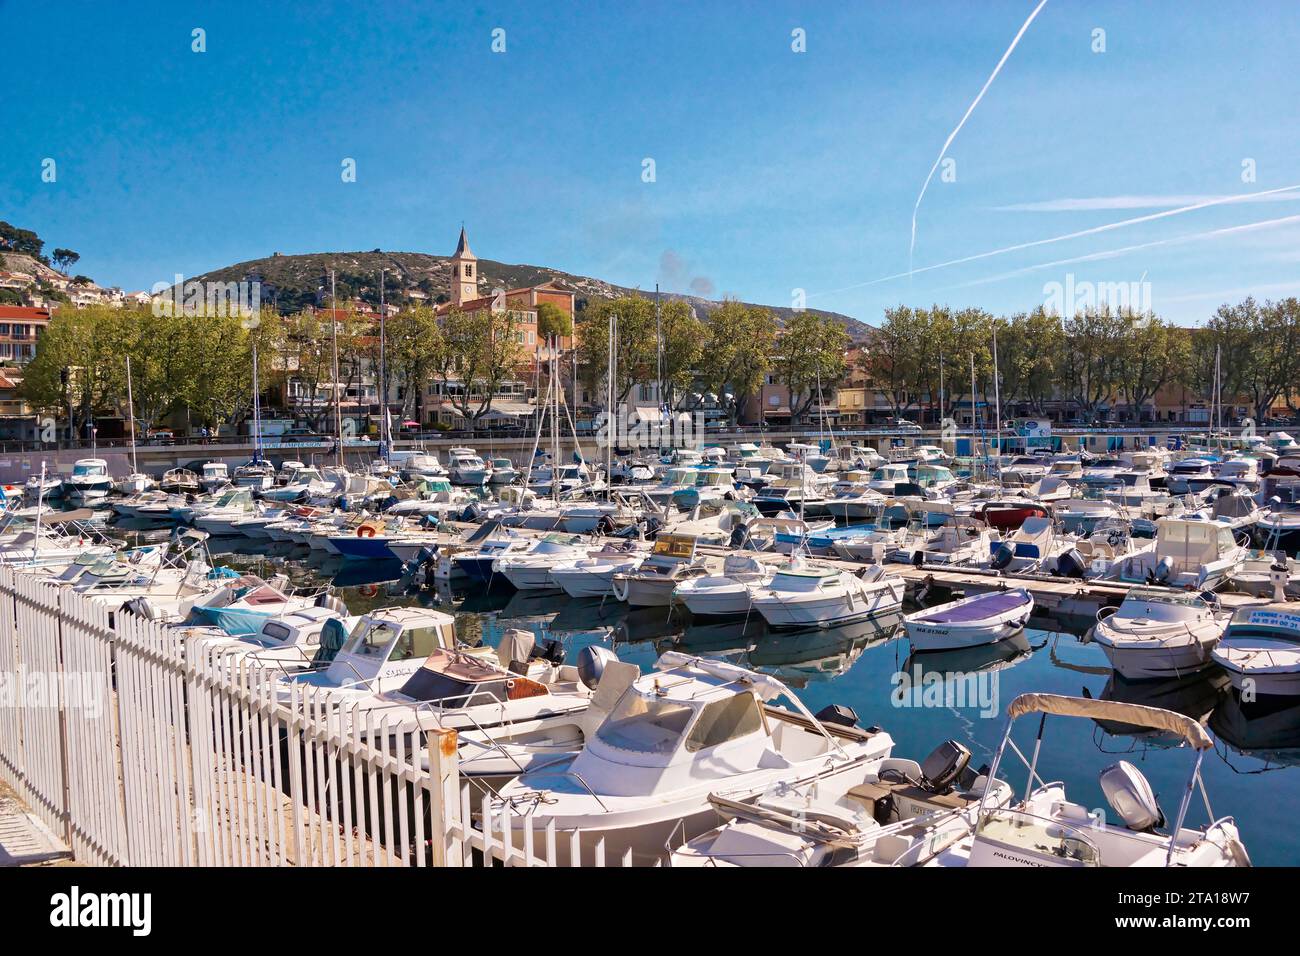 Série de photographies sur le petit port de pêche de l’Estaque, un quartier du nord de Marseille Banque D'Images